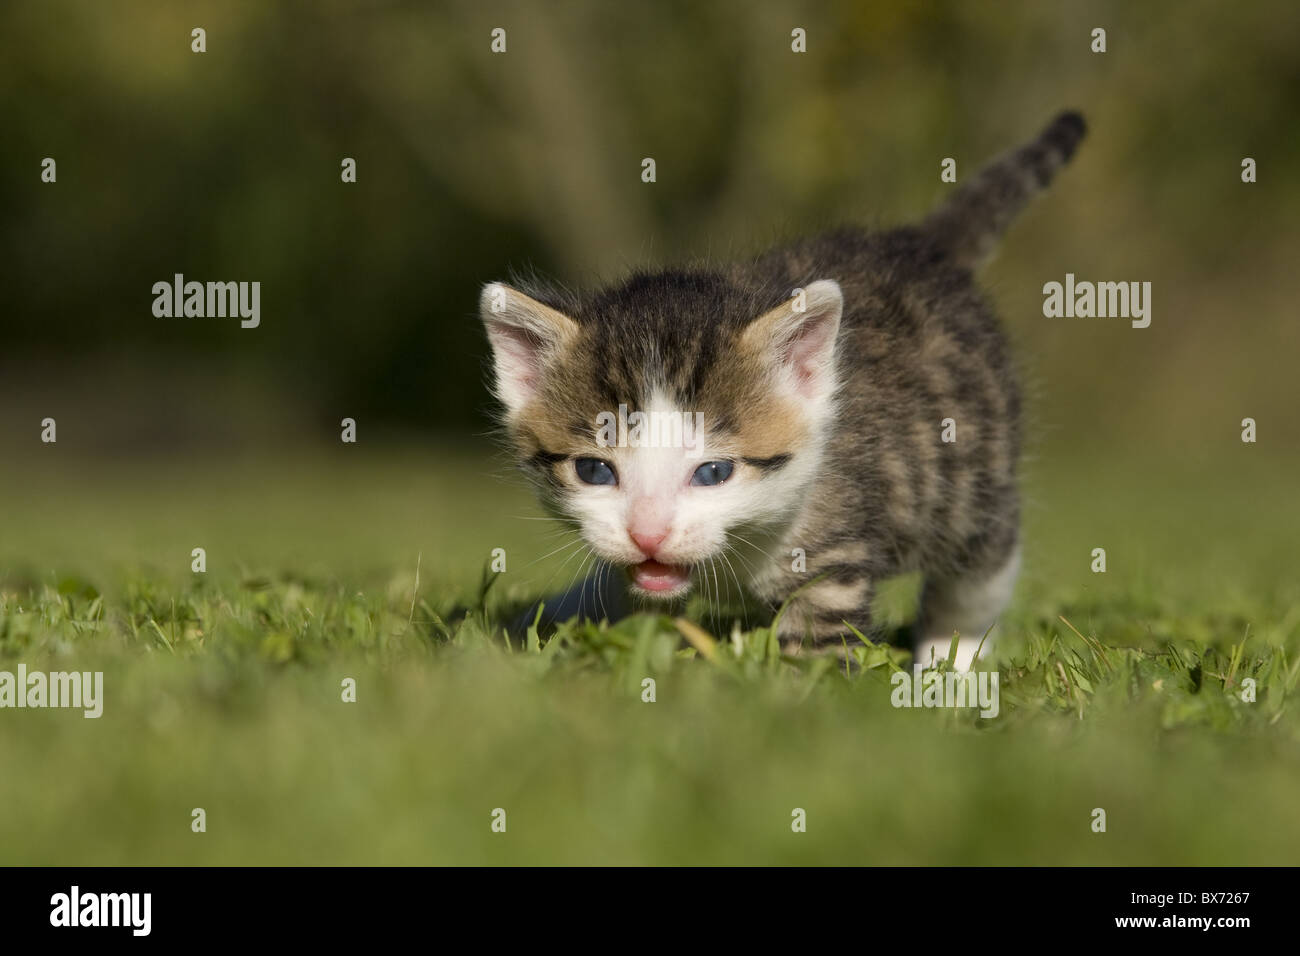 Katze, Kaetzchen gehend auf Wiese, Cat, kitten walking on a meadow Stock Photo